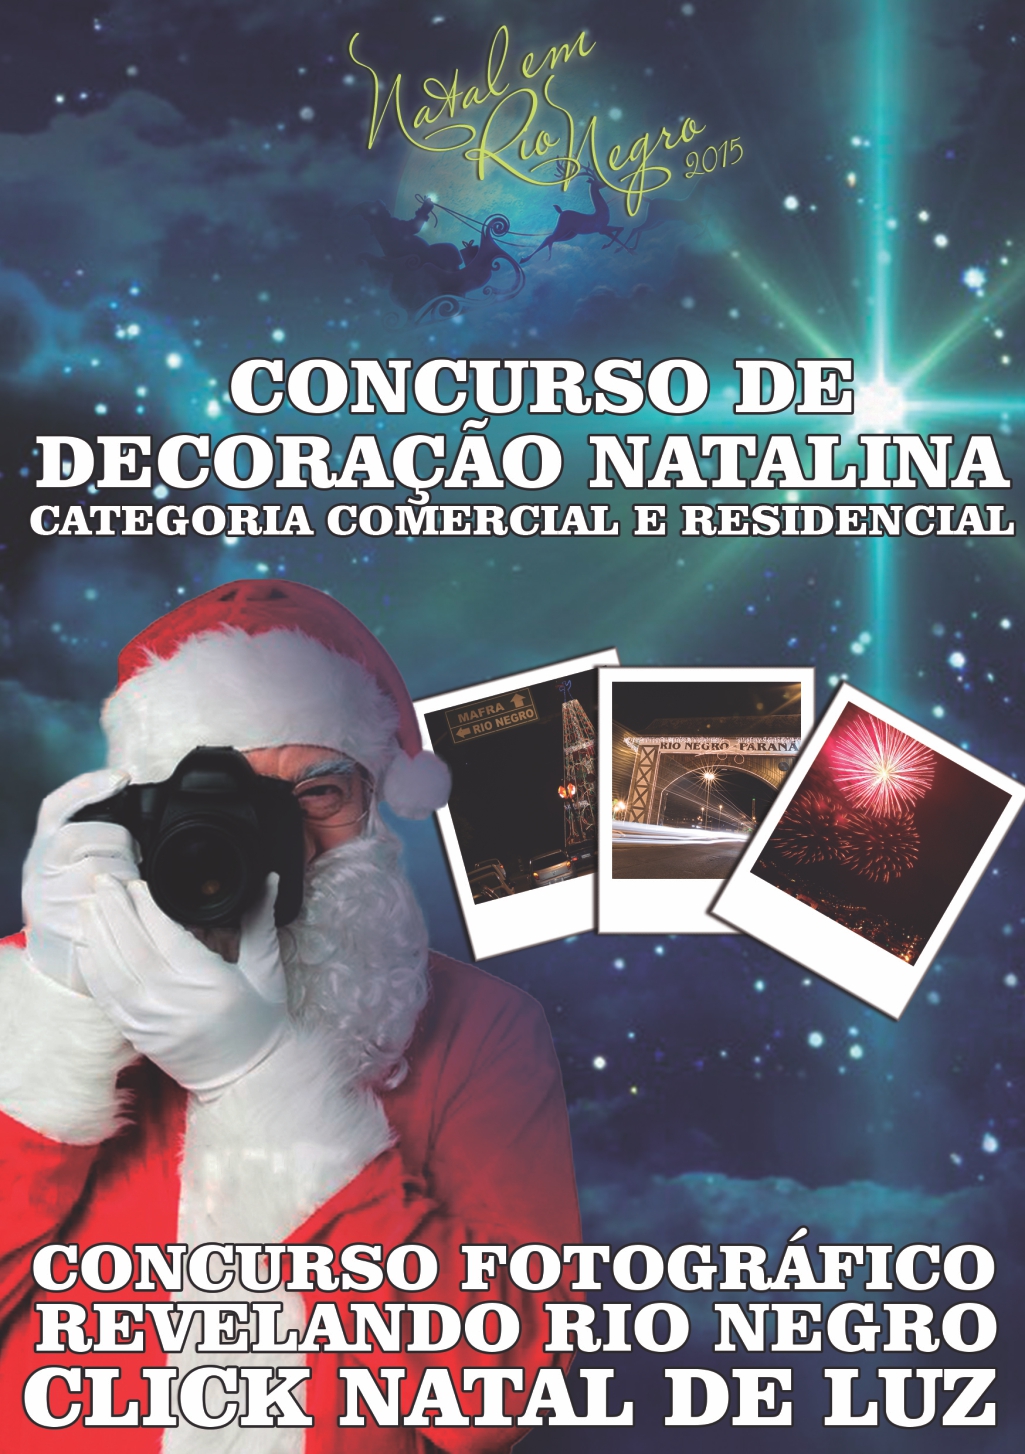 Concurso de decoração natalina e fotografia estão com inscrições abertas em Rio Negro